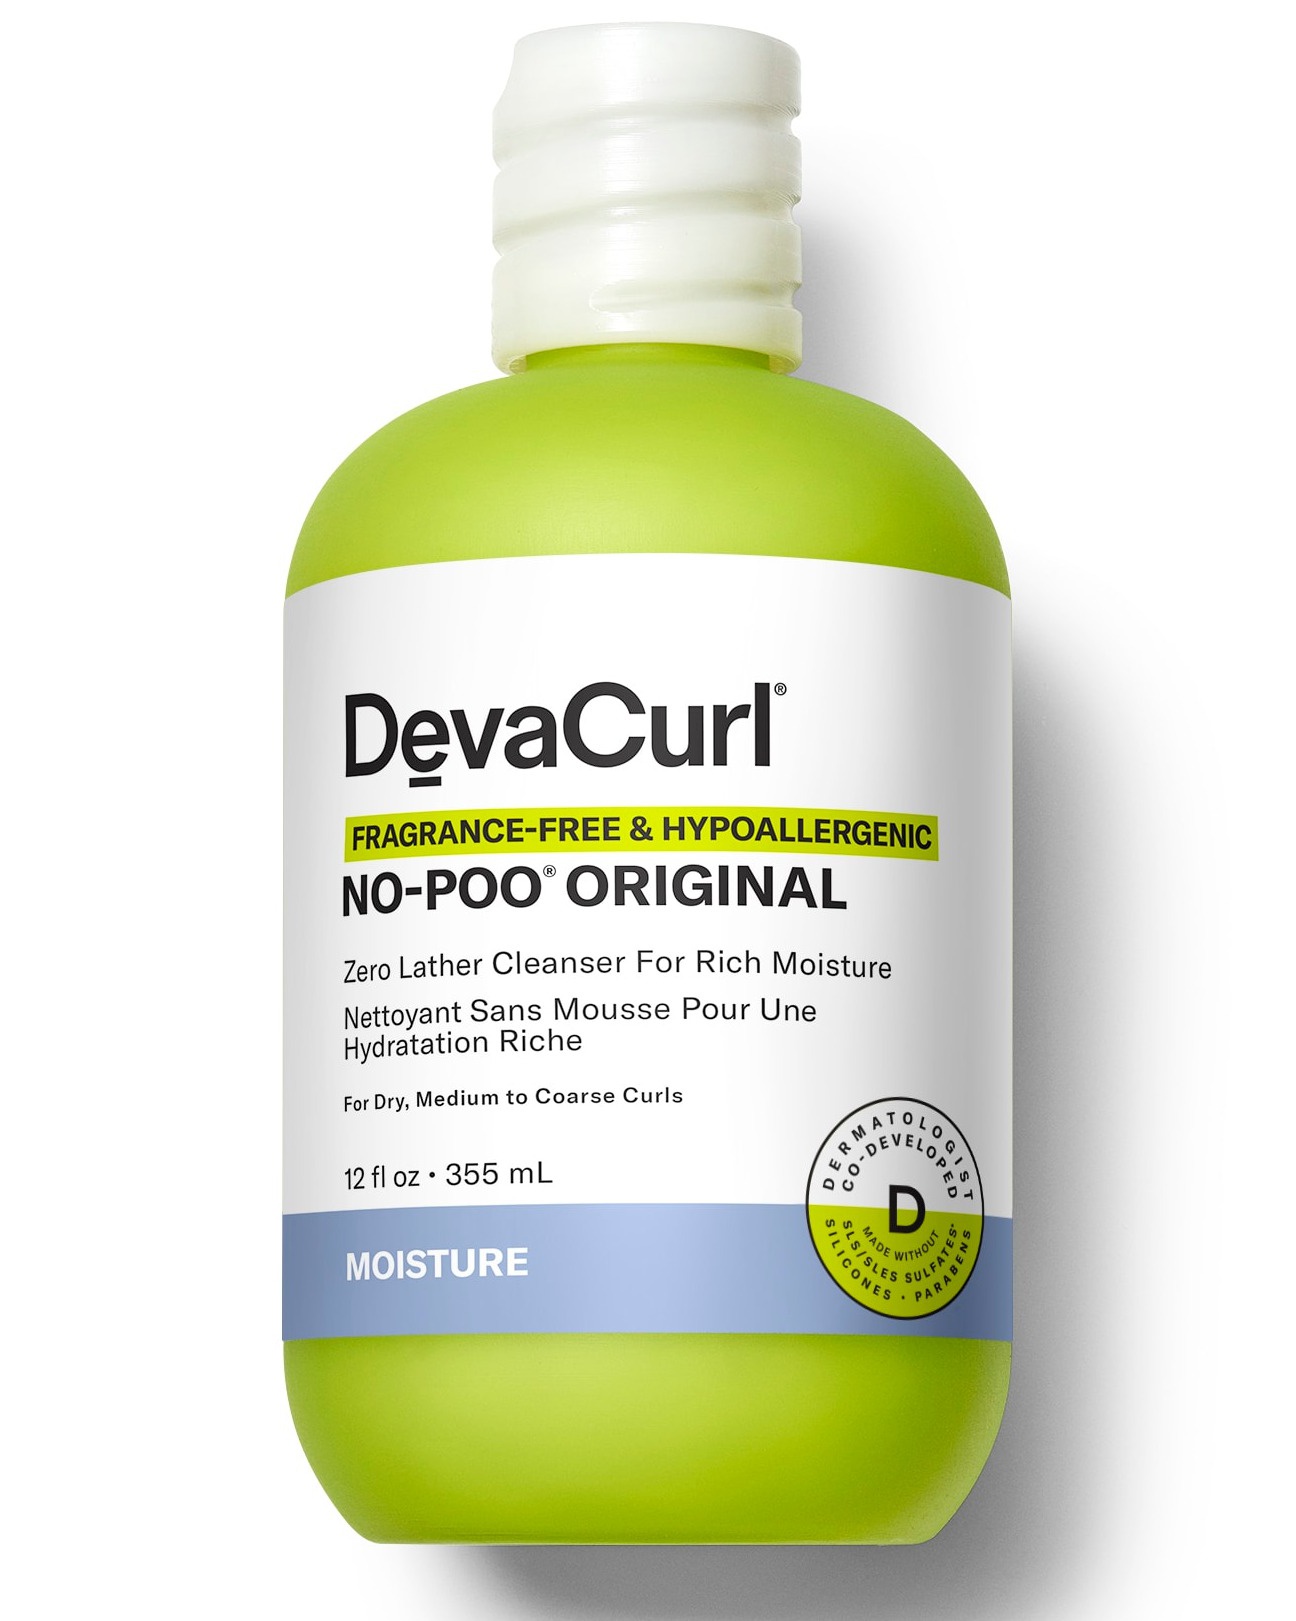 DevaCurl Fragrance-free & Hypoallergenic No-poo Original